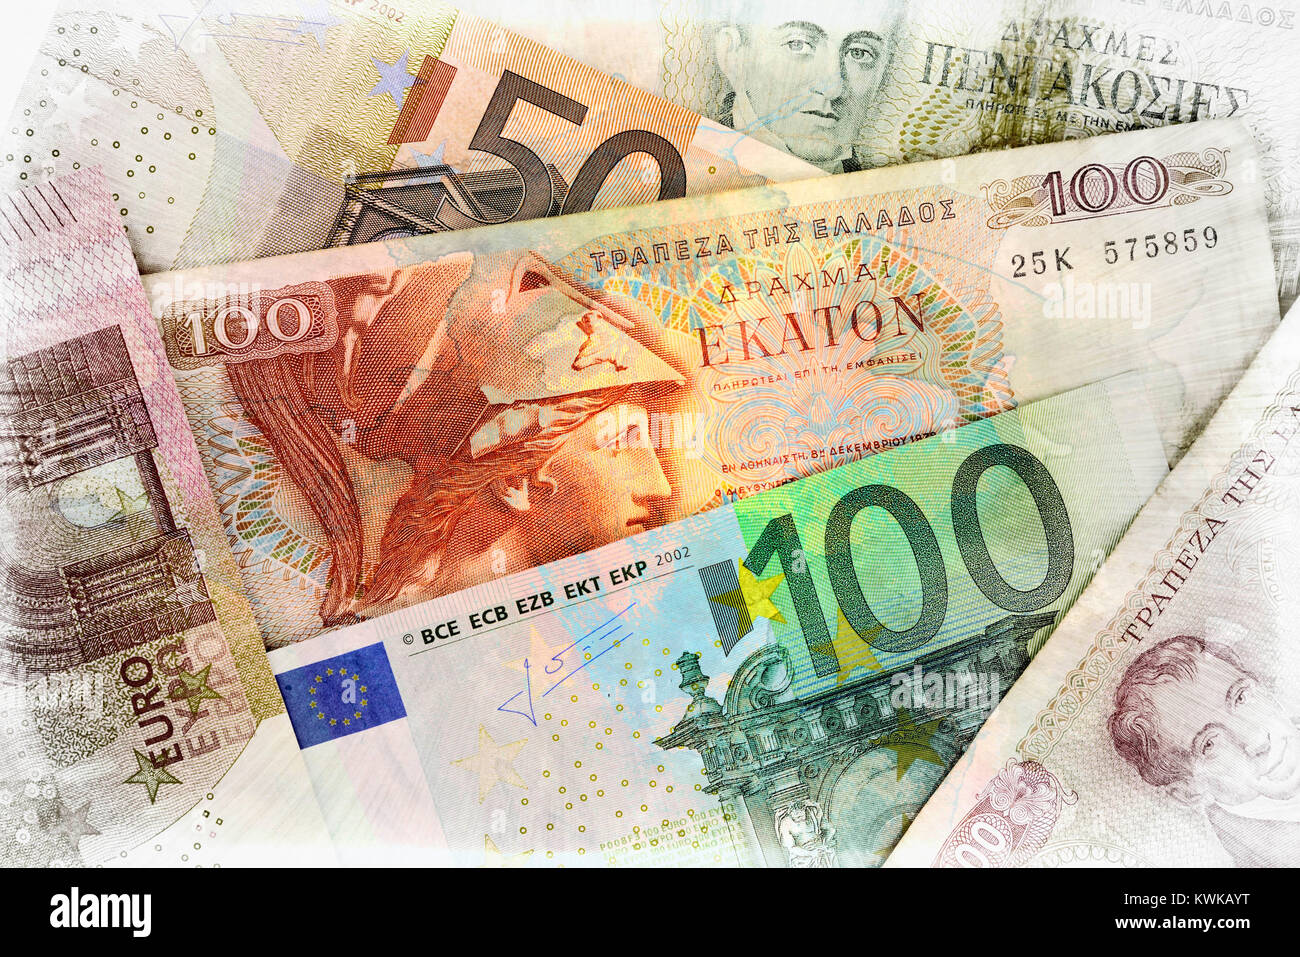 Greek drachms and euronotes, Griechische Drachmen und Euroscheine Stock Photo